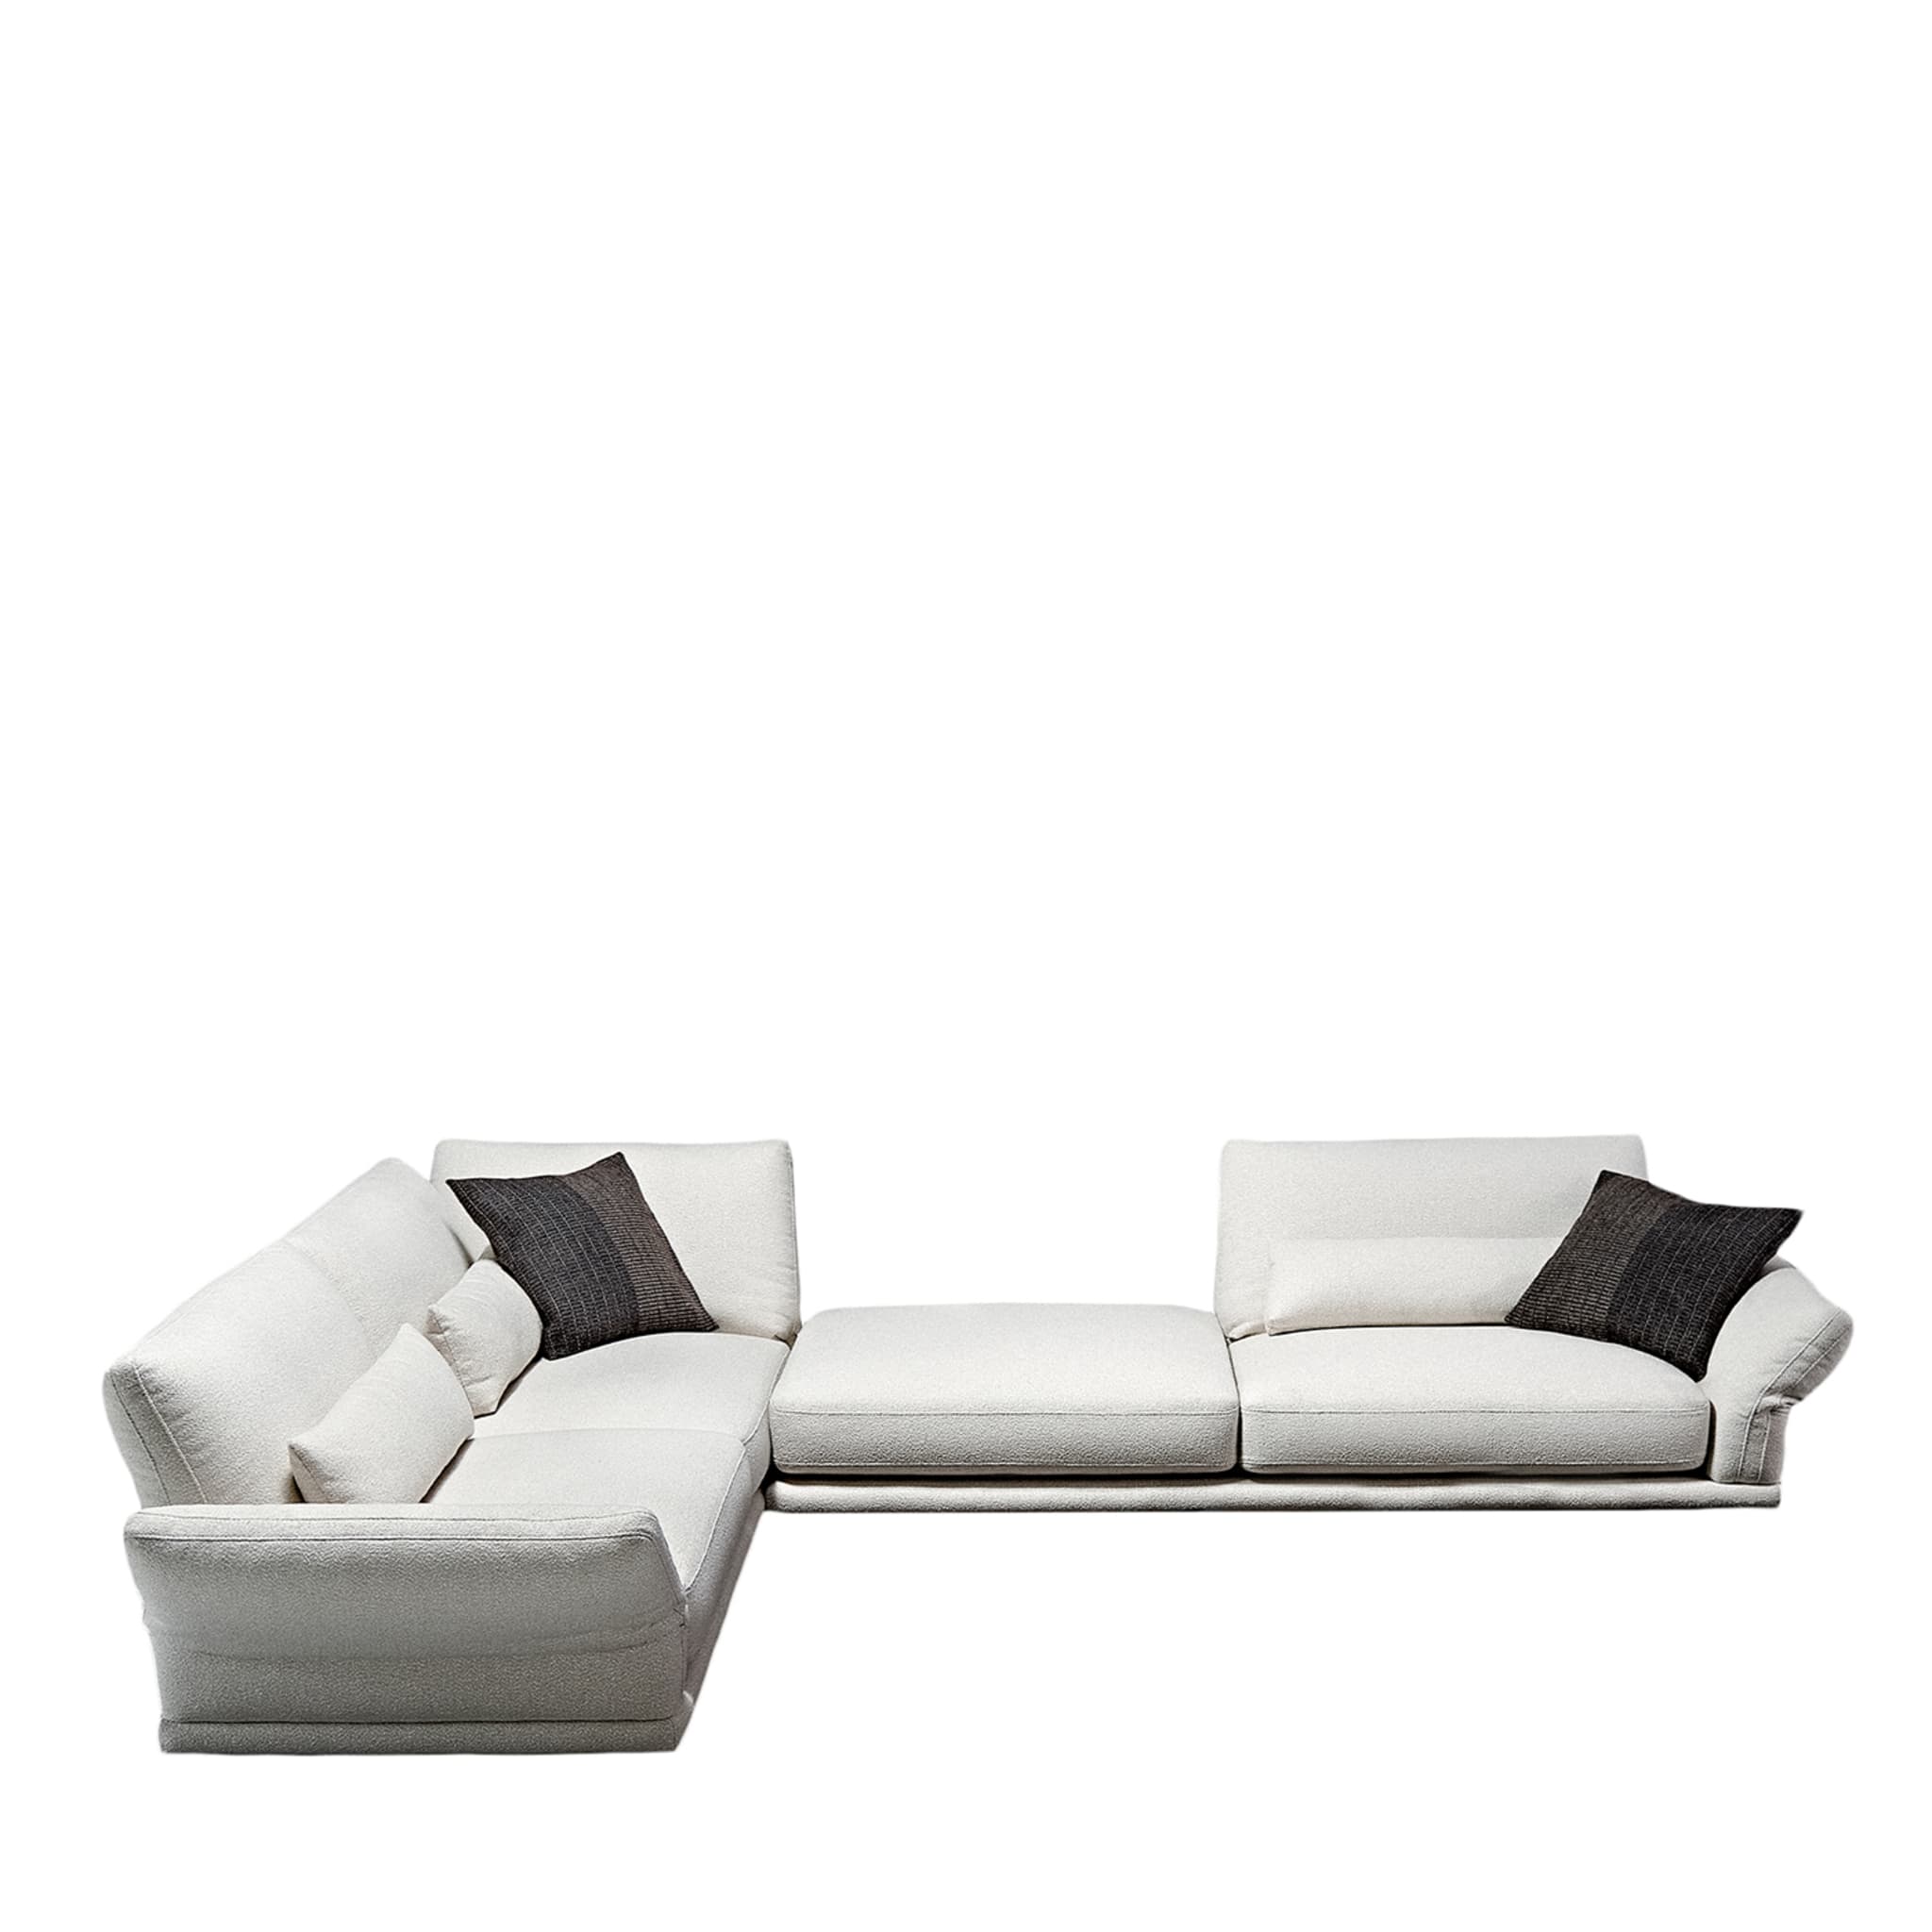 Beverly Modulares winkeliges weißes sofa von Ludovica + Roberto Palomba - Hauptansicht